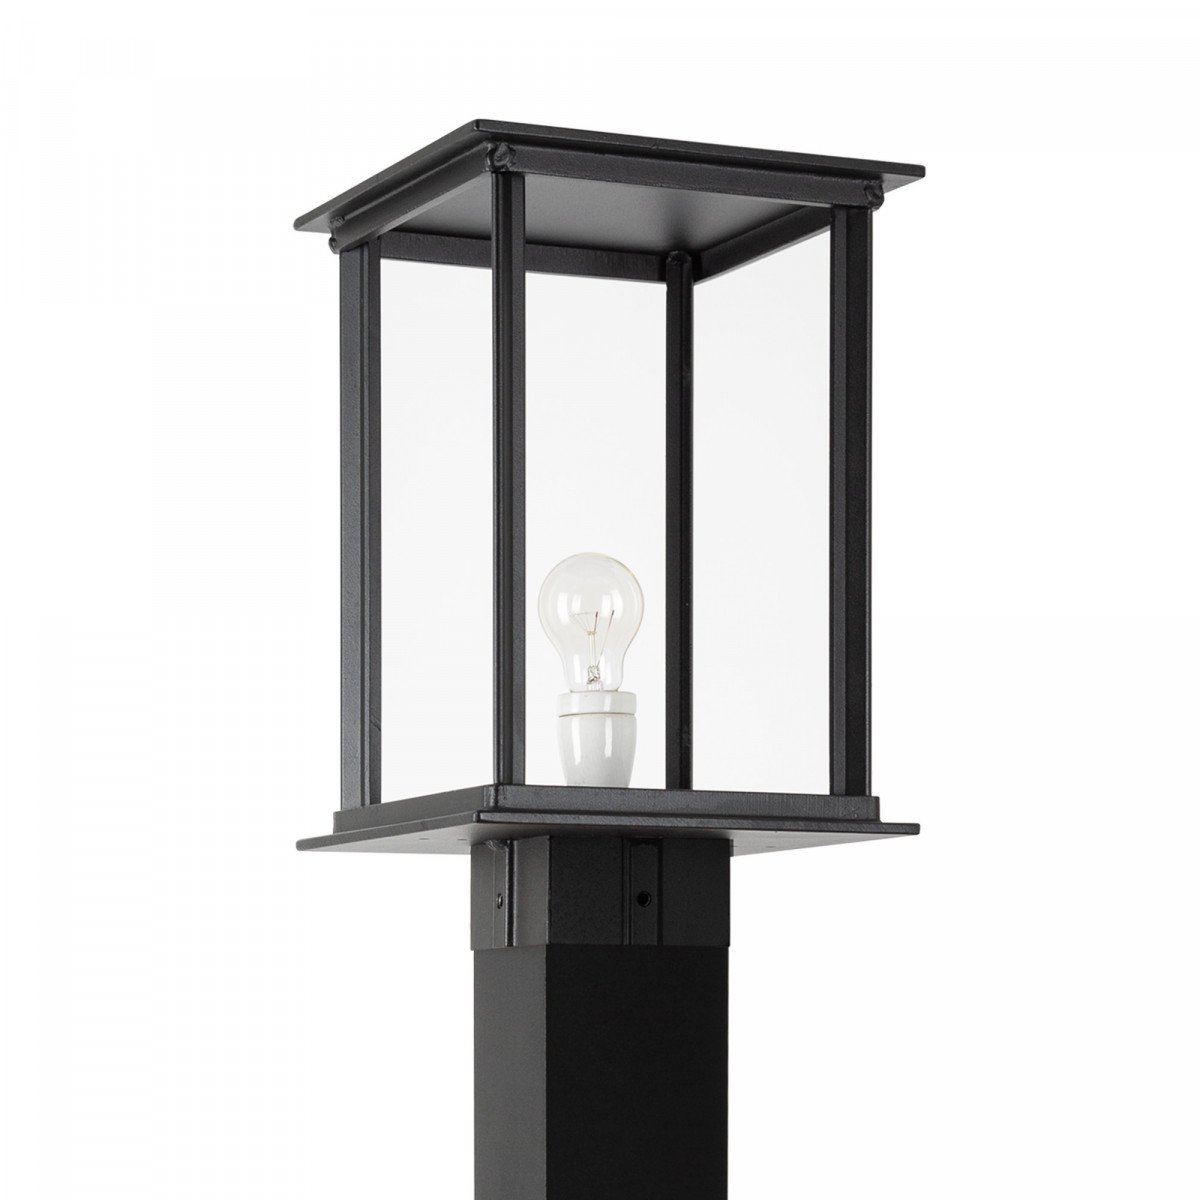 Lampe d'extérieur Vondel Terrace XL éclairage d'extérieur noir de style classique avec forme carrée